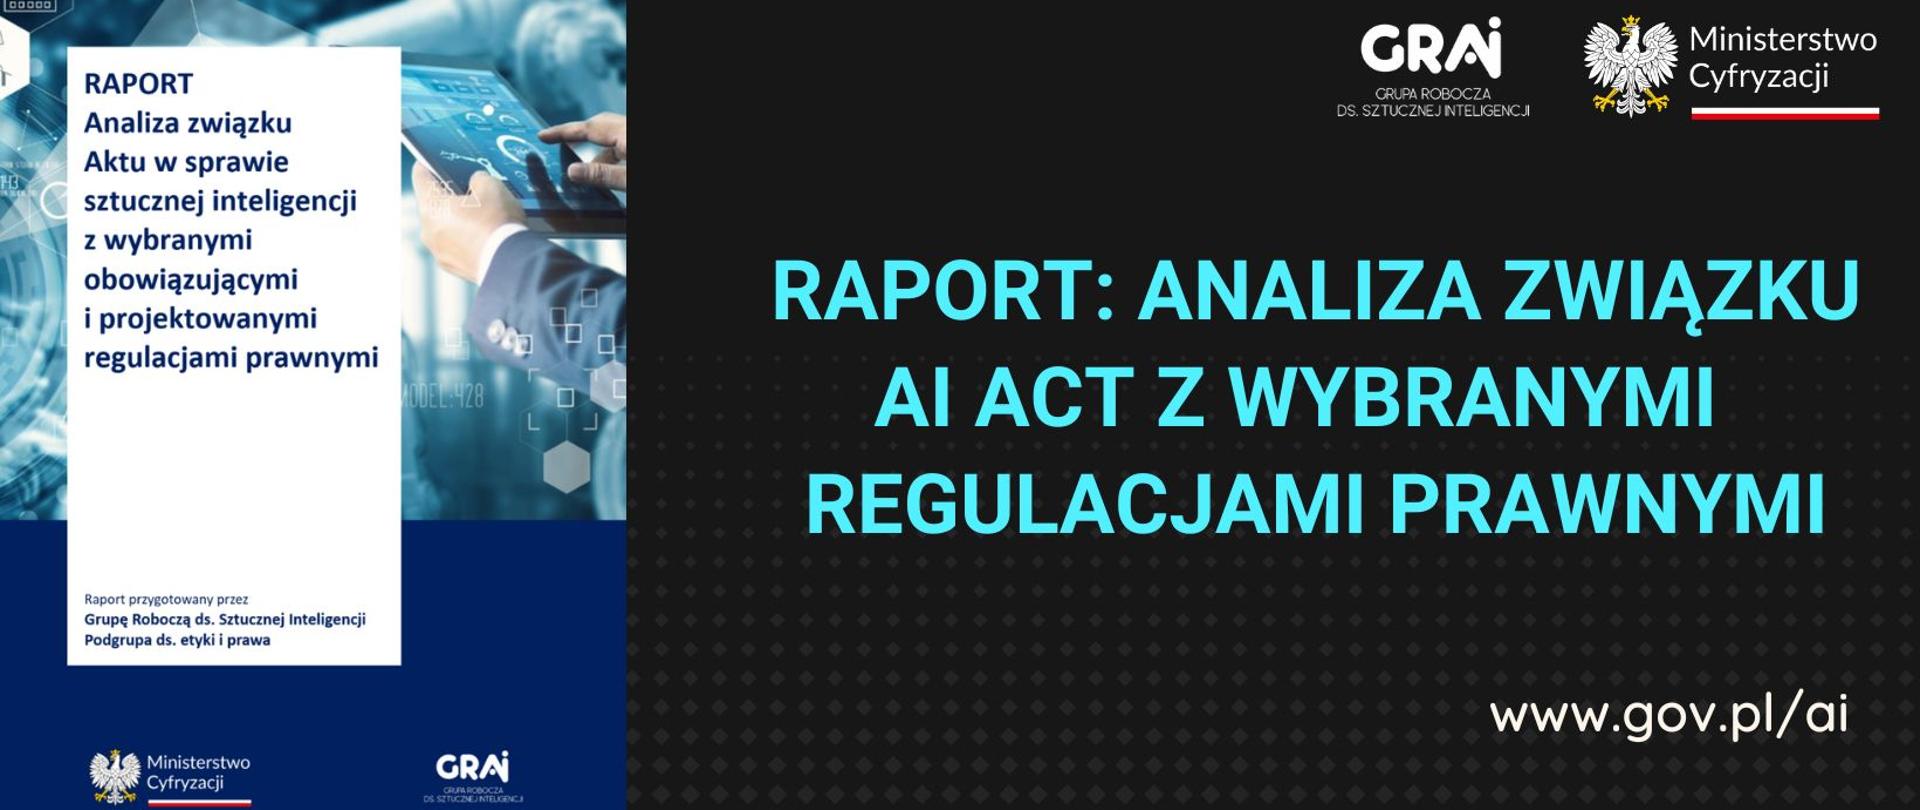 Analiza związku AI ACT z wybranymi regulacjami prawnymi